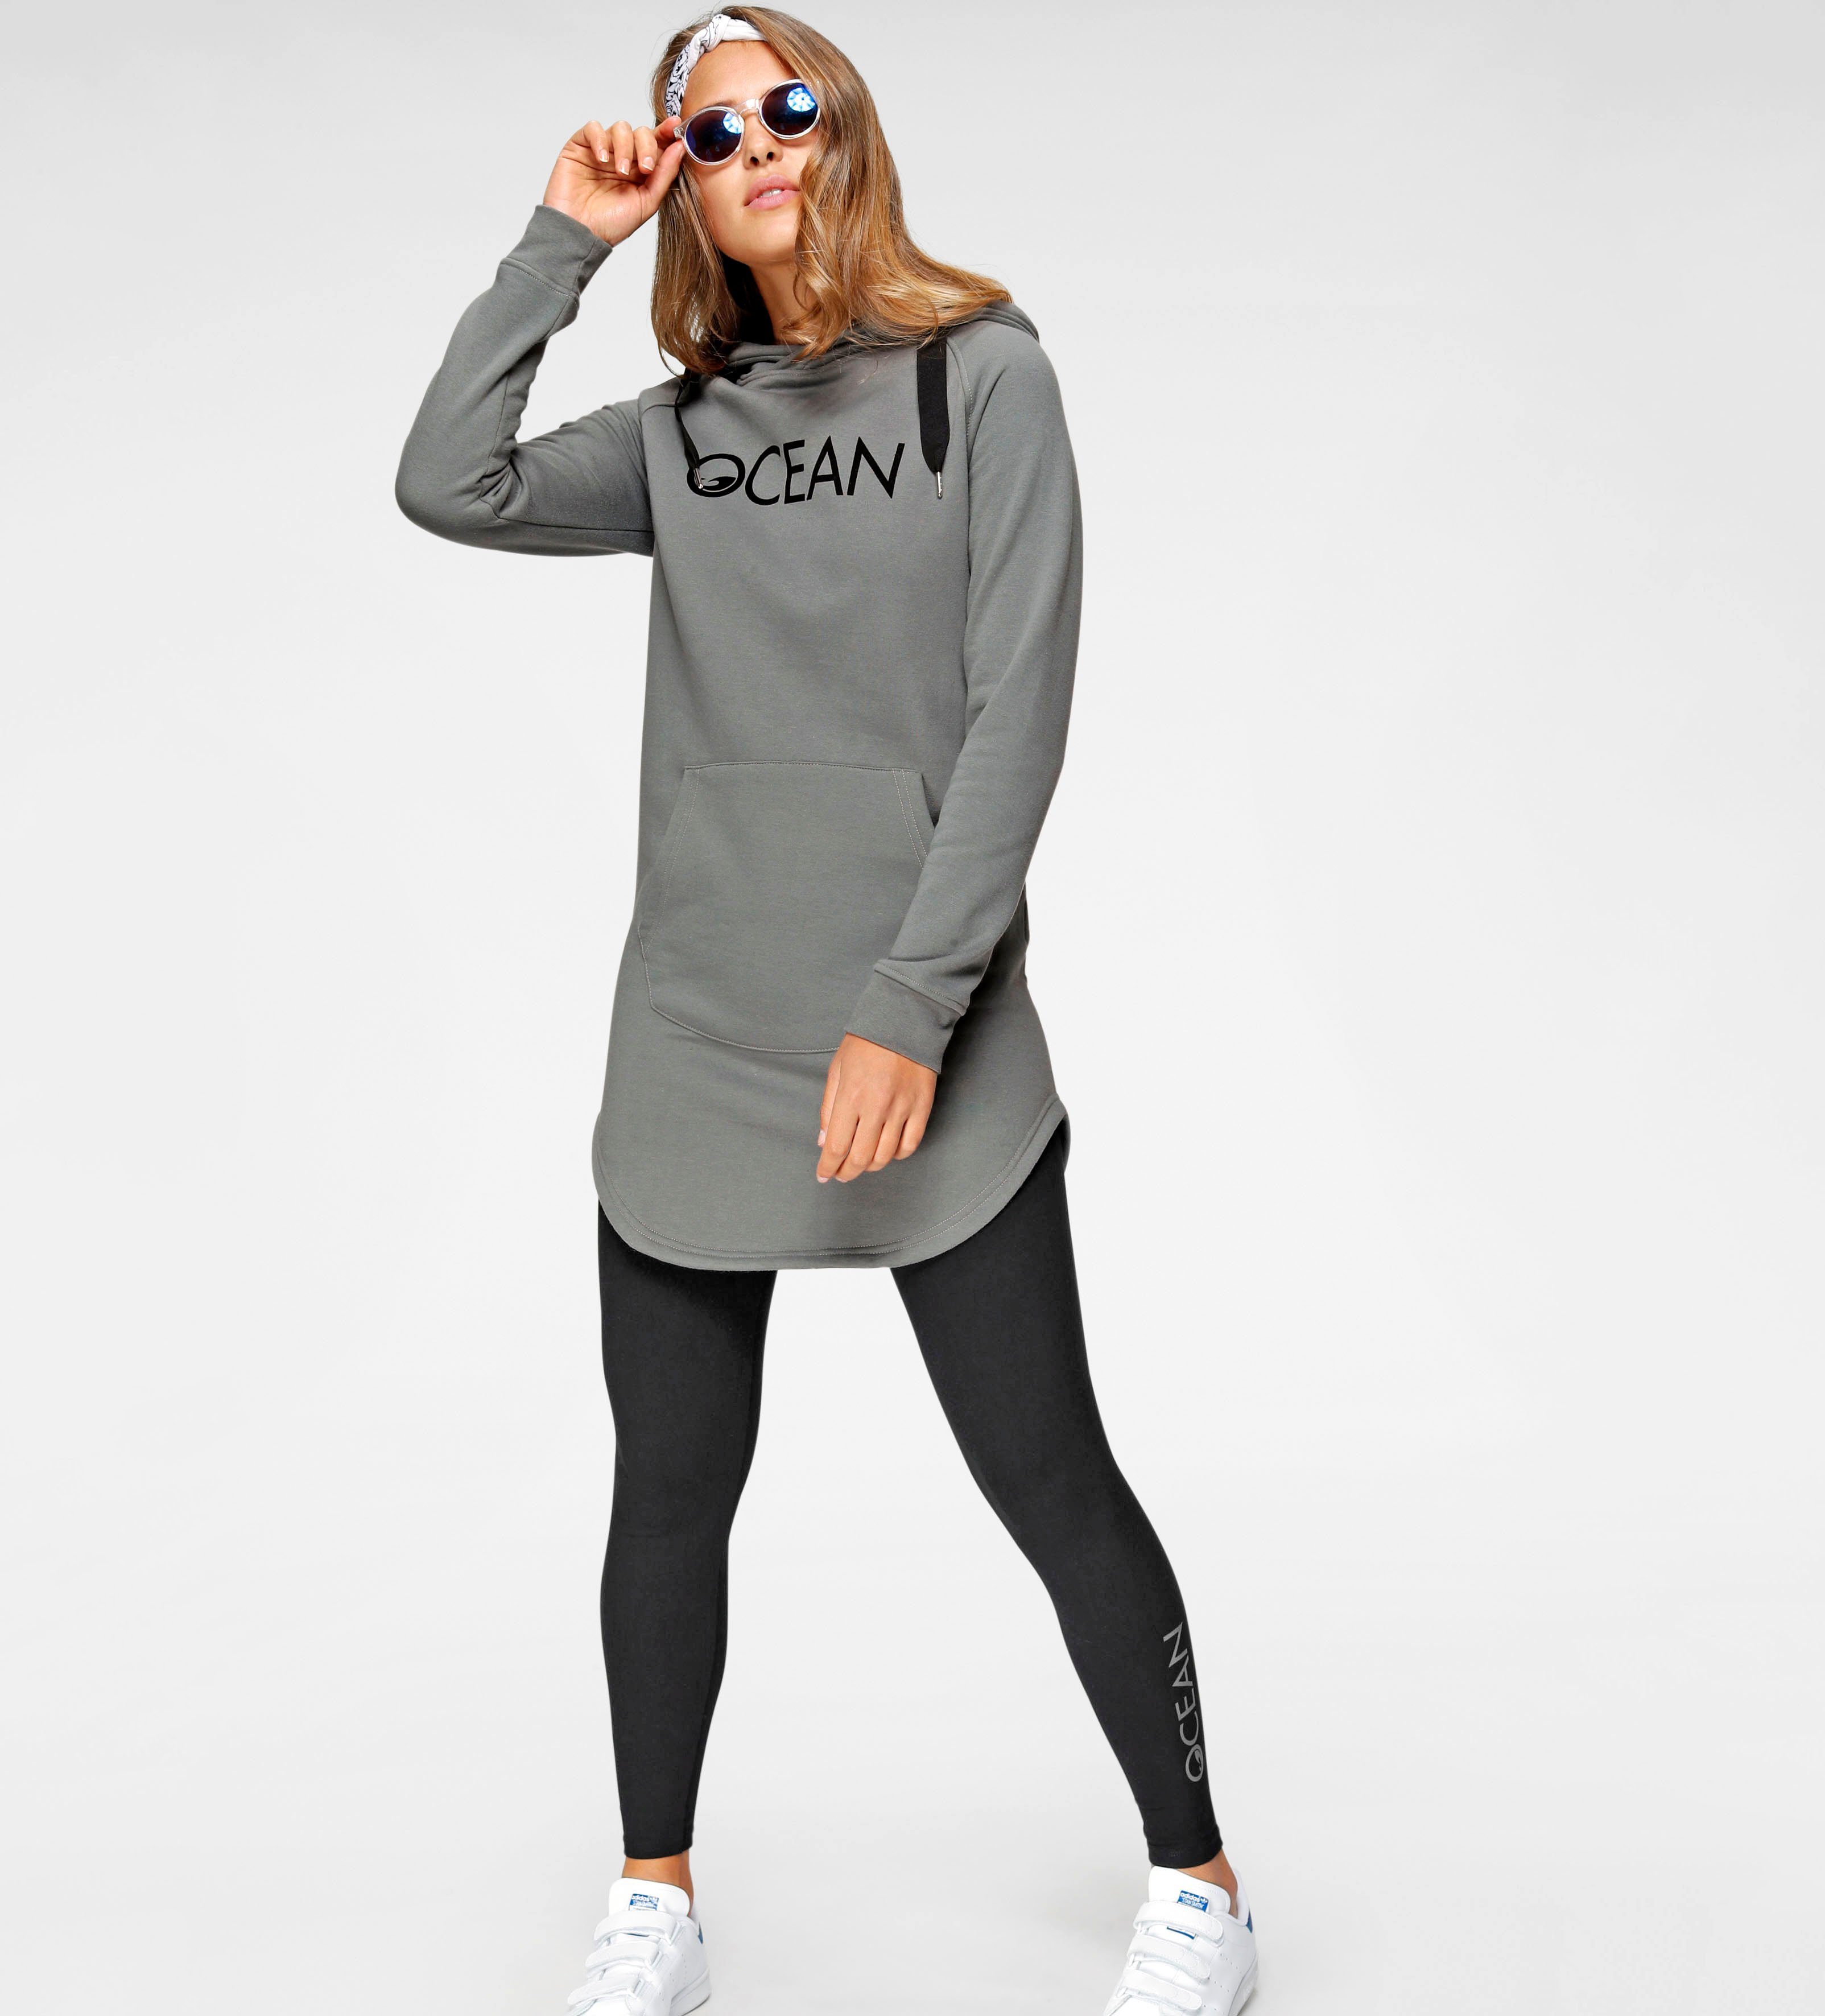 Ocean Sportswear Damenmode online kaufen | OTTO